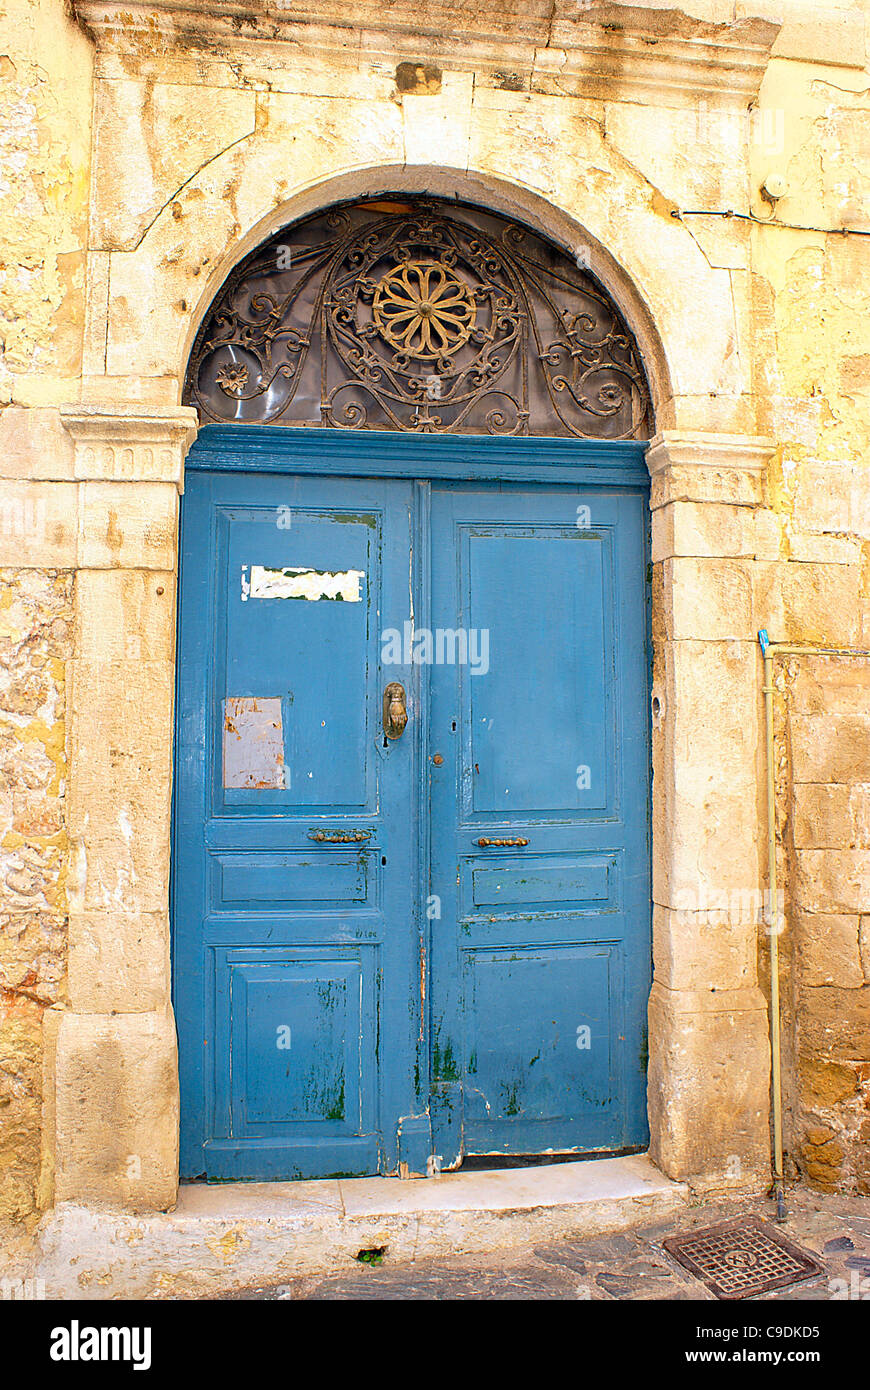 Détail d'une vieille porte vénitienne dans la ville de La Canée, Crète, Grèce Banque D'Images